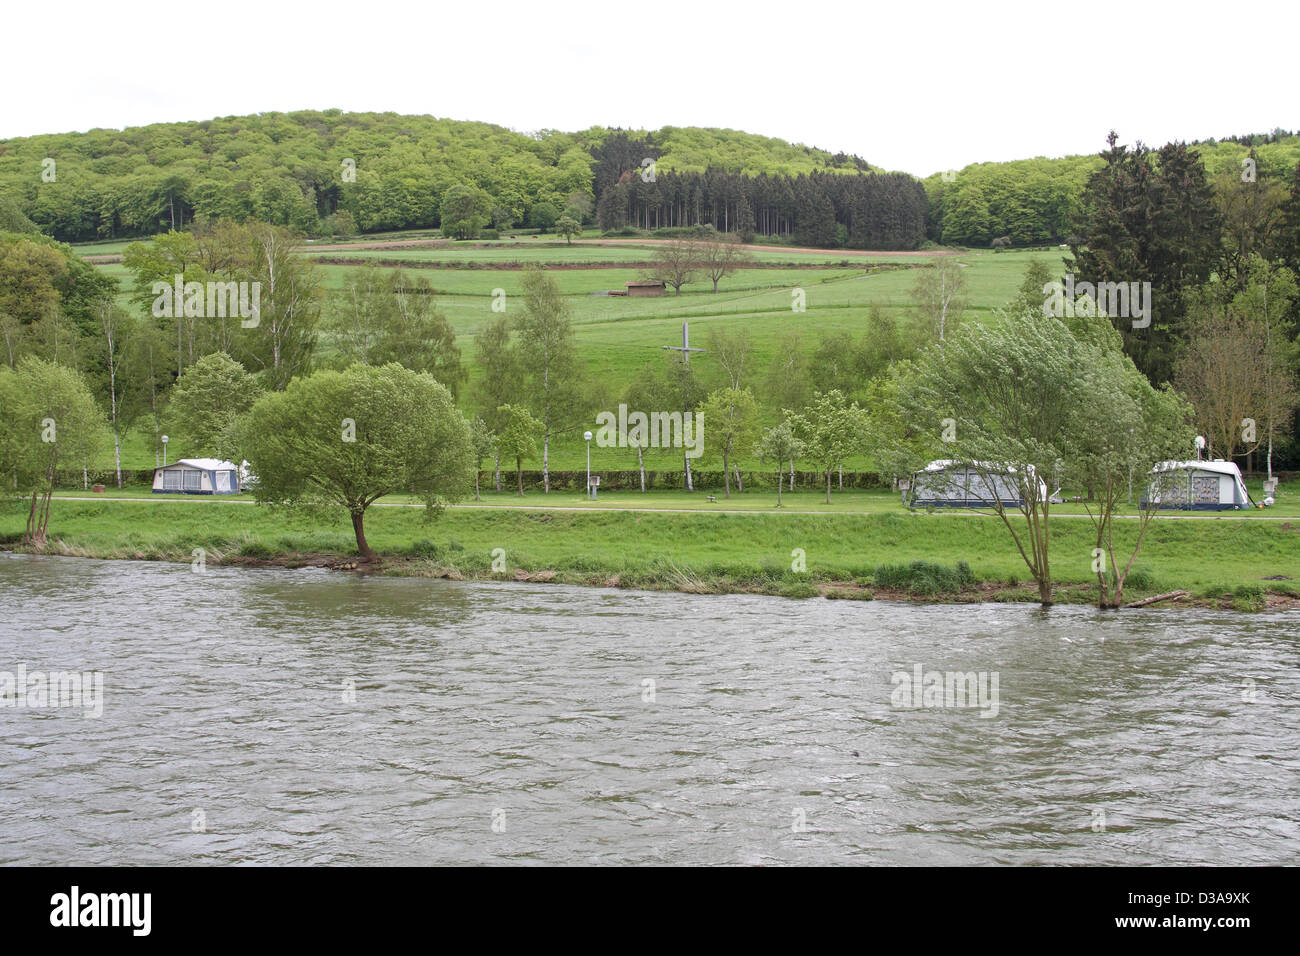 Luxembourg : camping de la rivière Sûre, près de Diekirch/Ettelbruck Banque D'Images